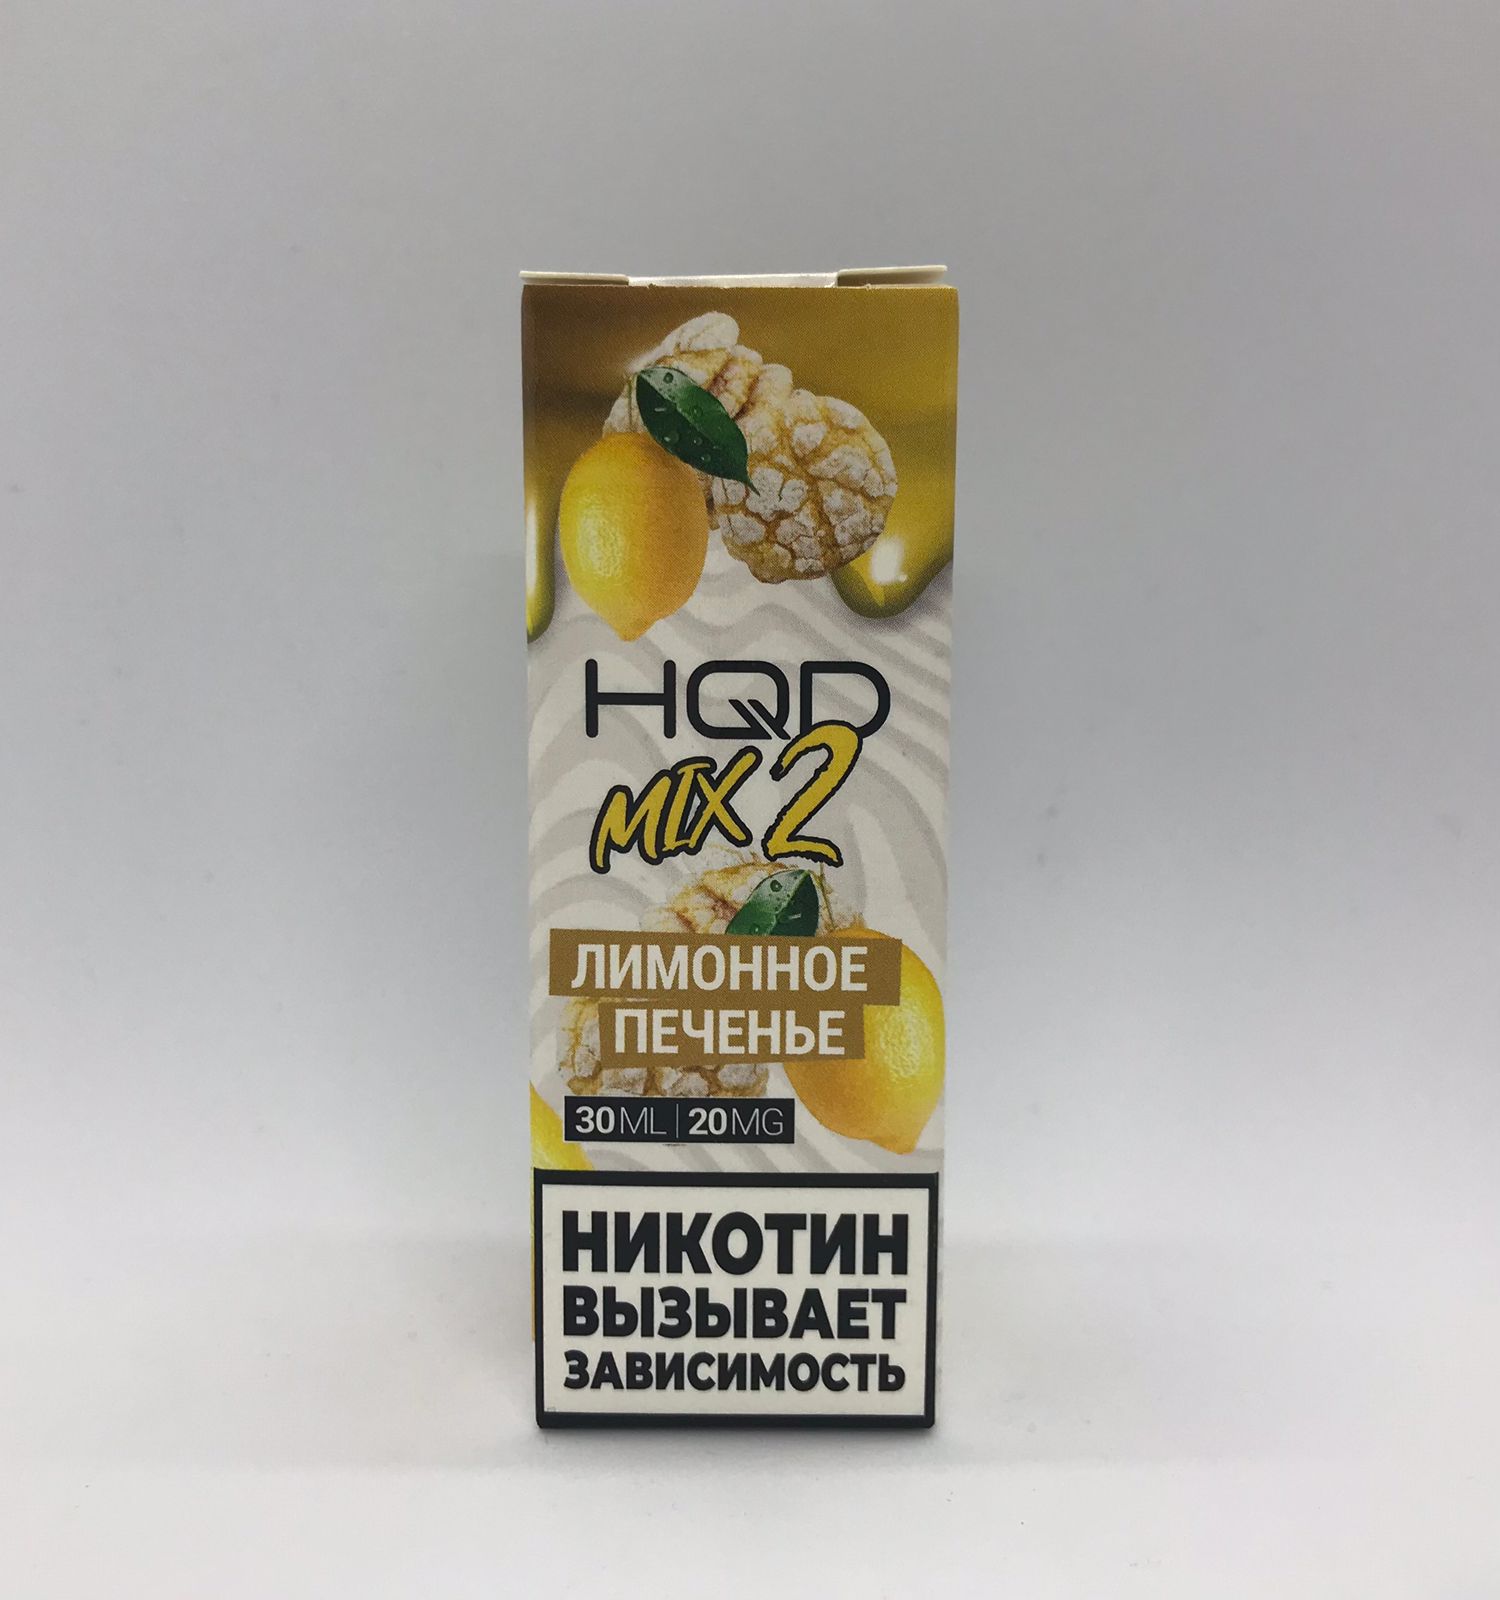 HQD MIX IT 2.0 / Лимонное печенье